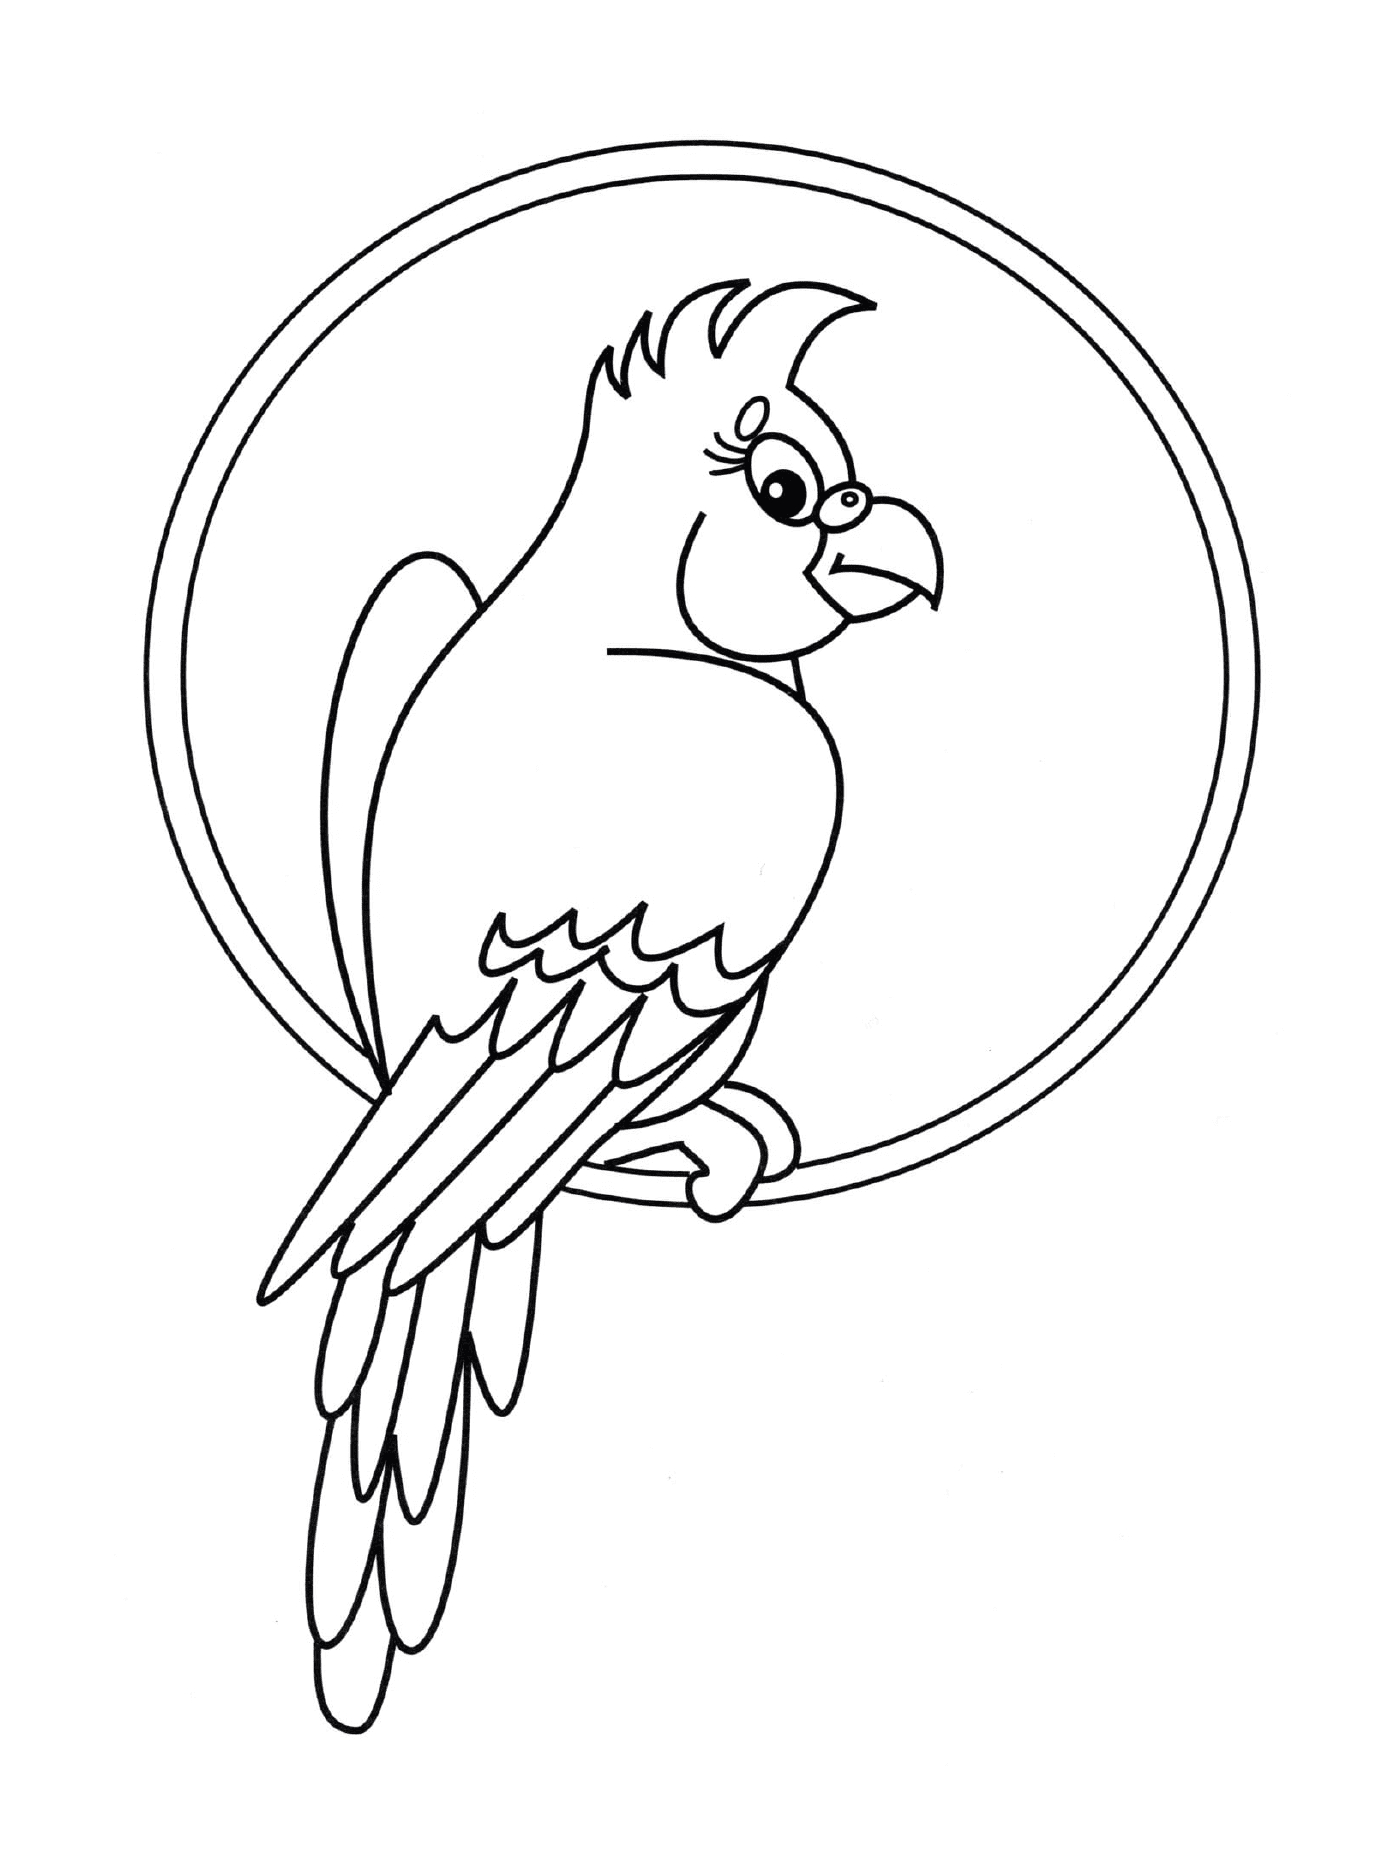  Parrot sentado em um círculo 